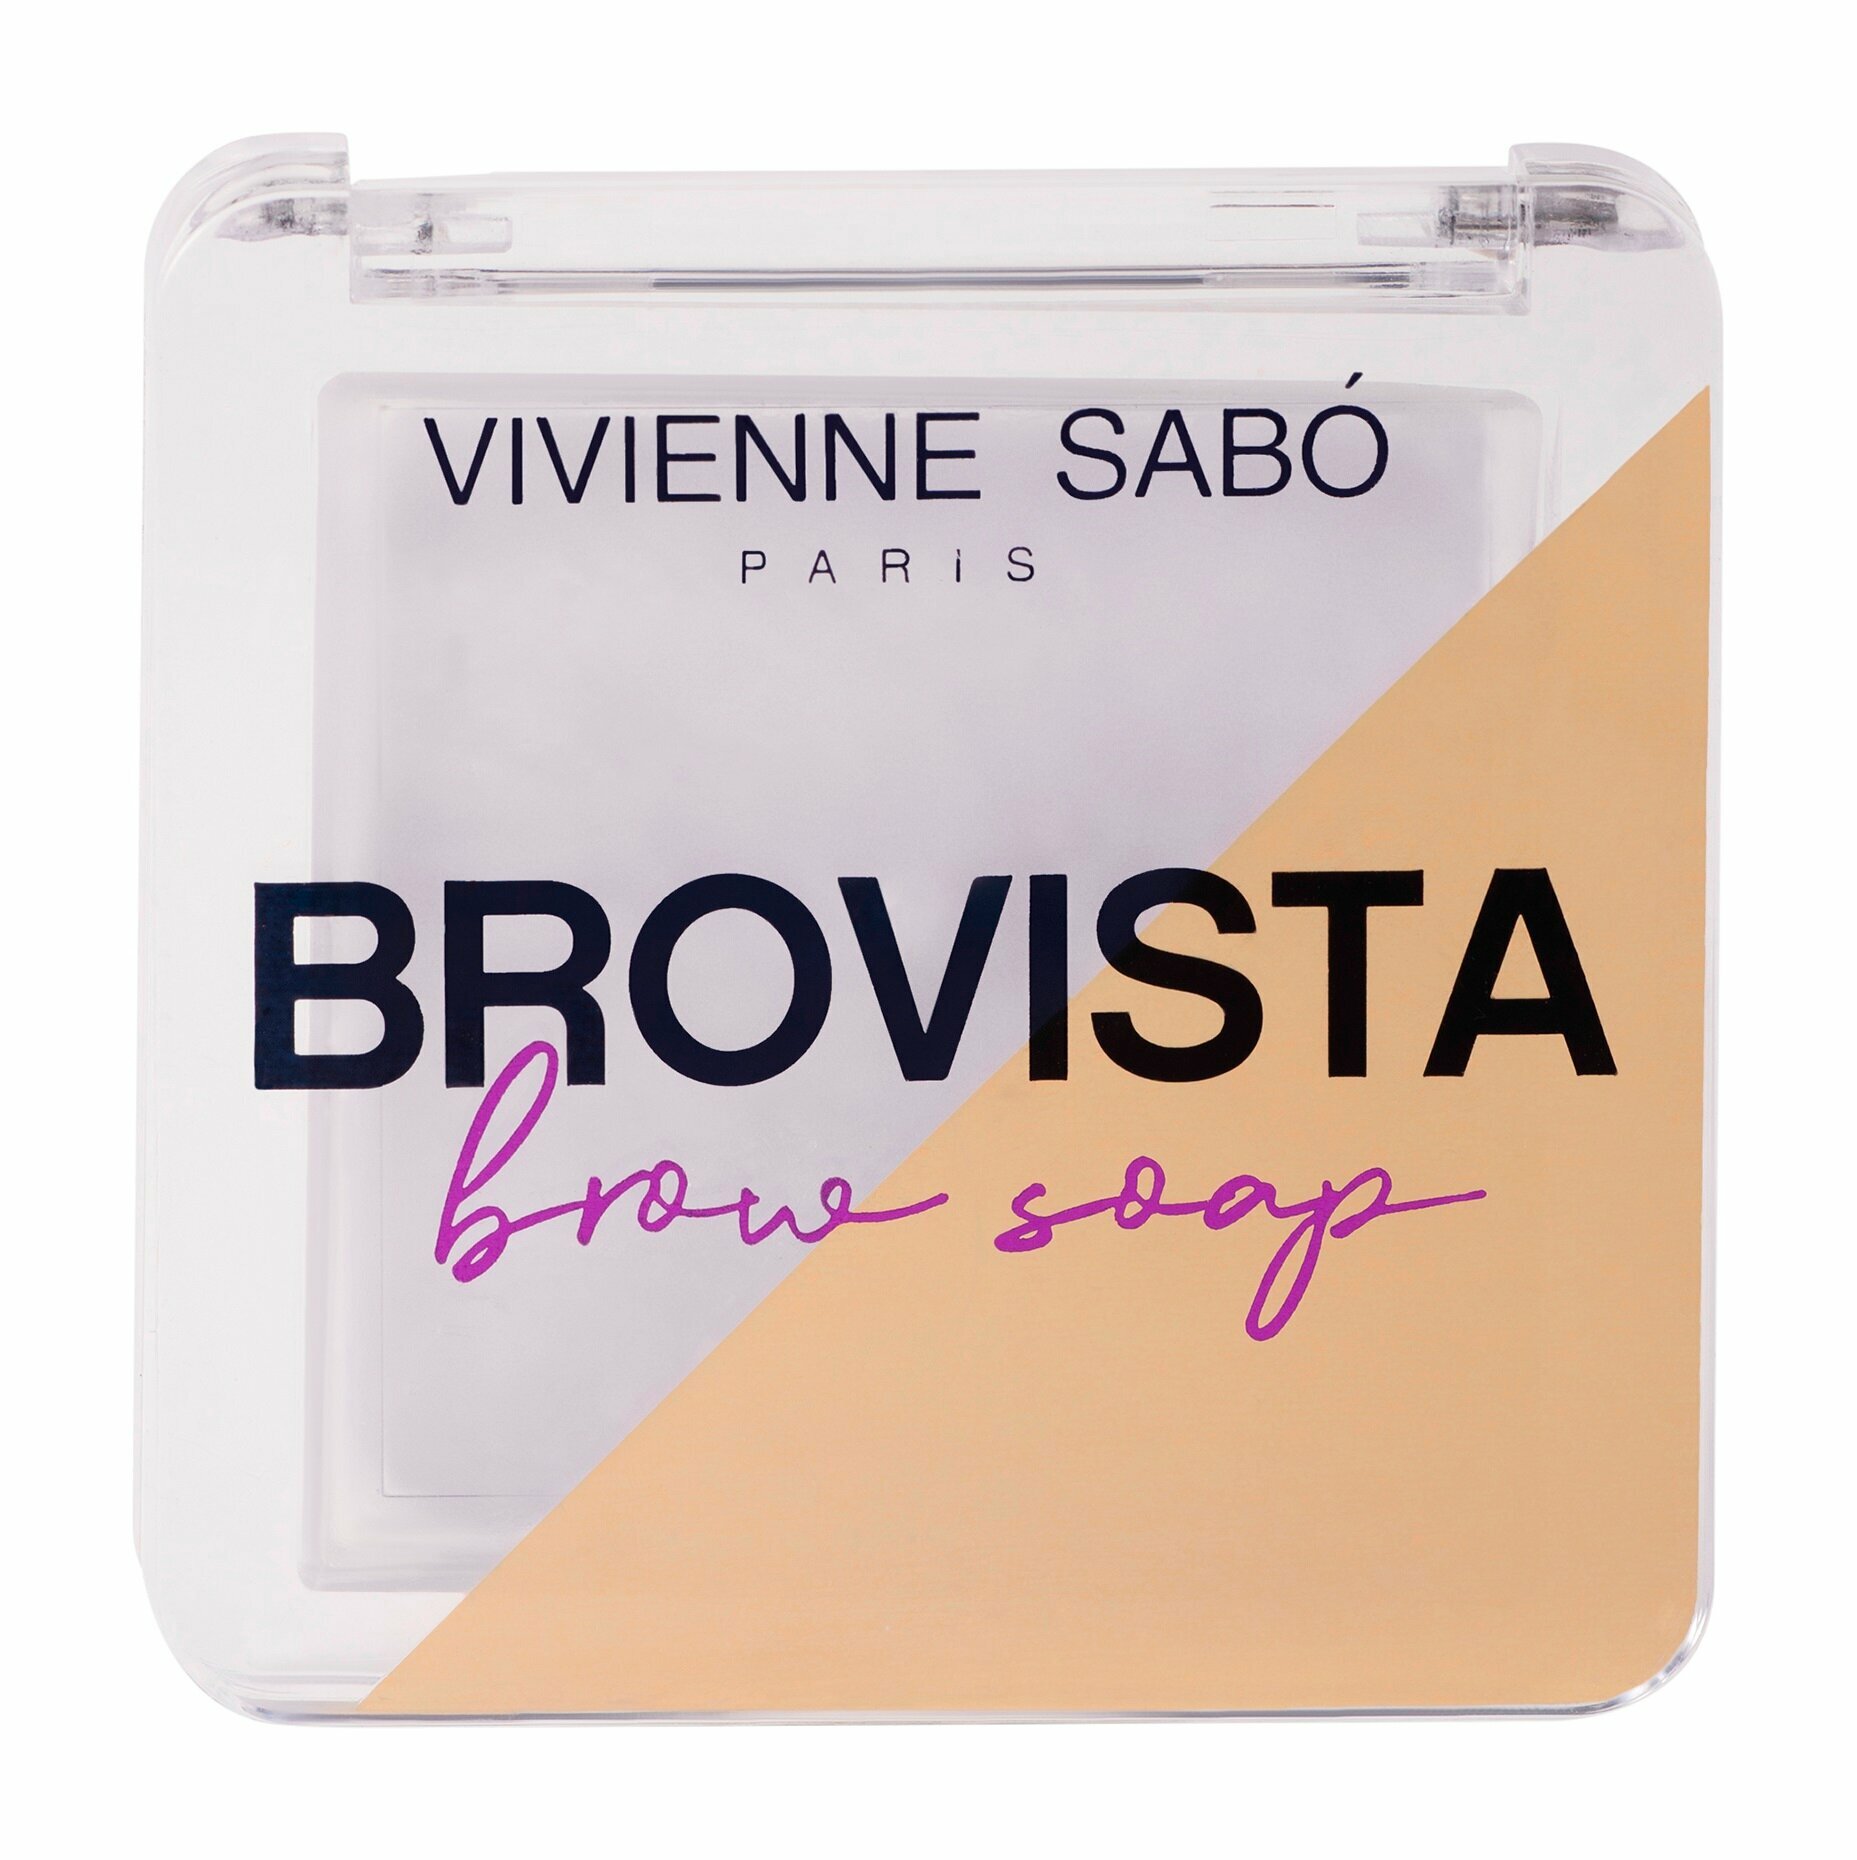 Фиксатор для бровей Vivienne Sabo Brovista brow soap - фото №12